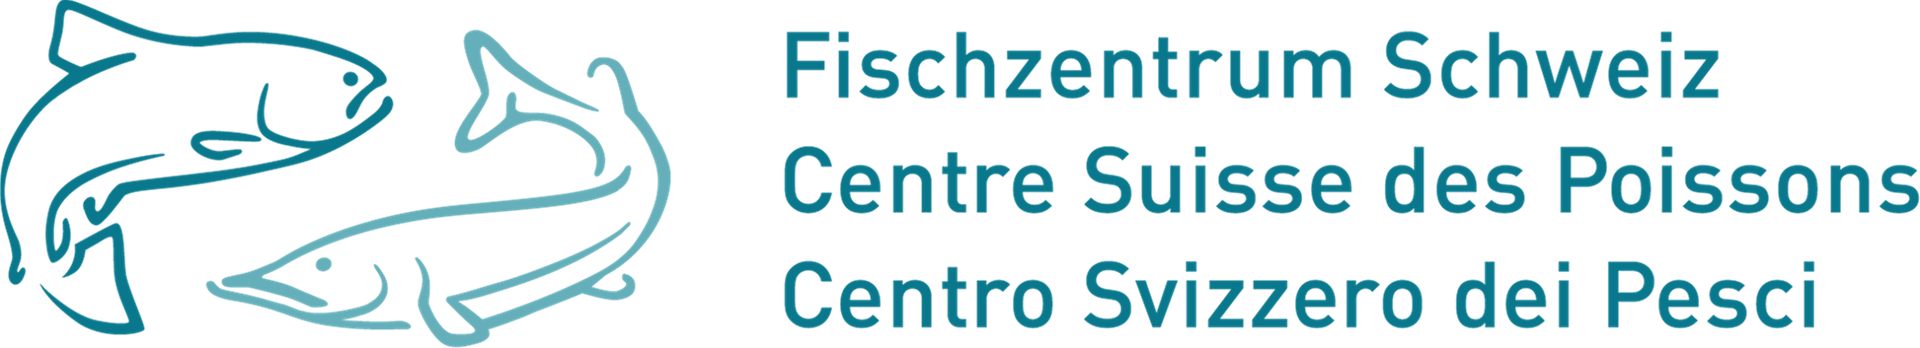 Logo Fischzentrum Schweiz